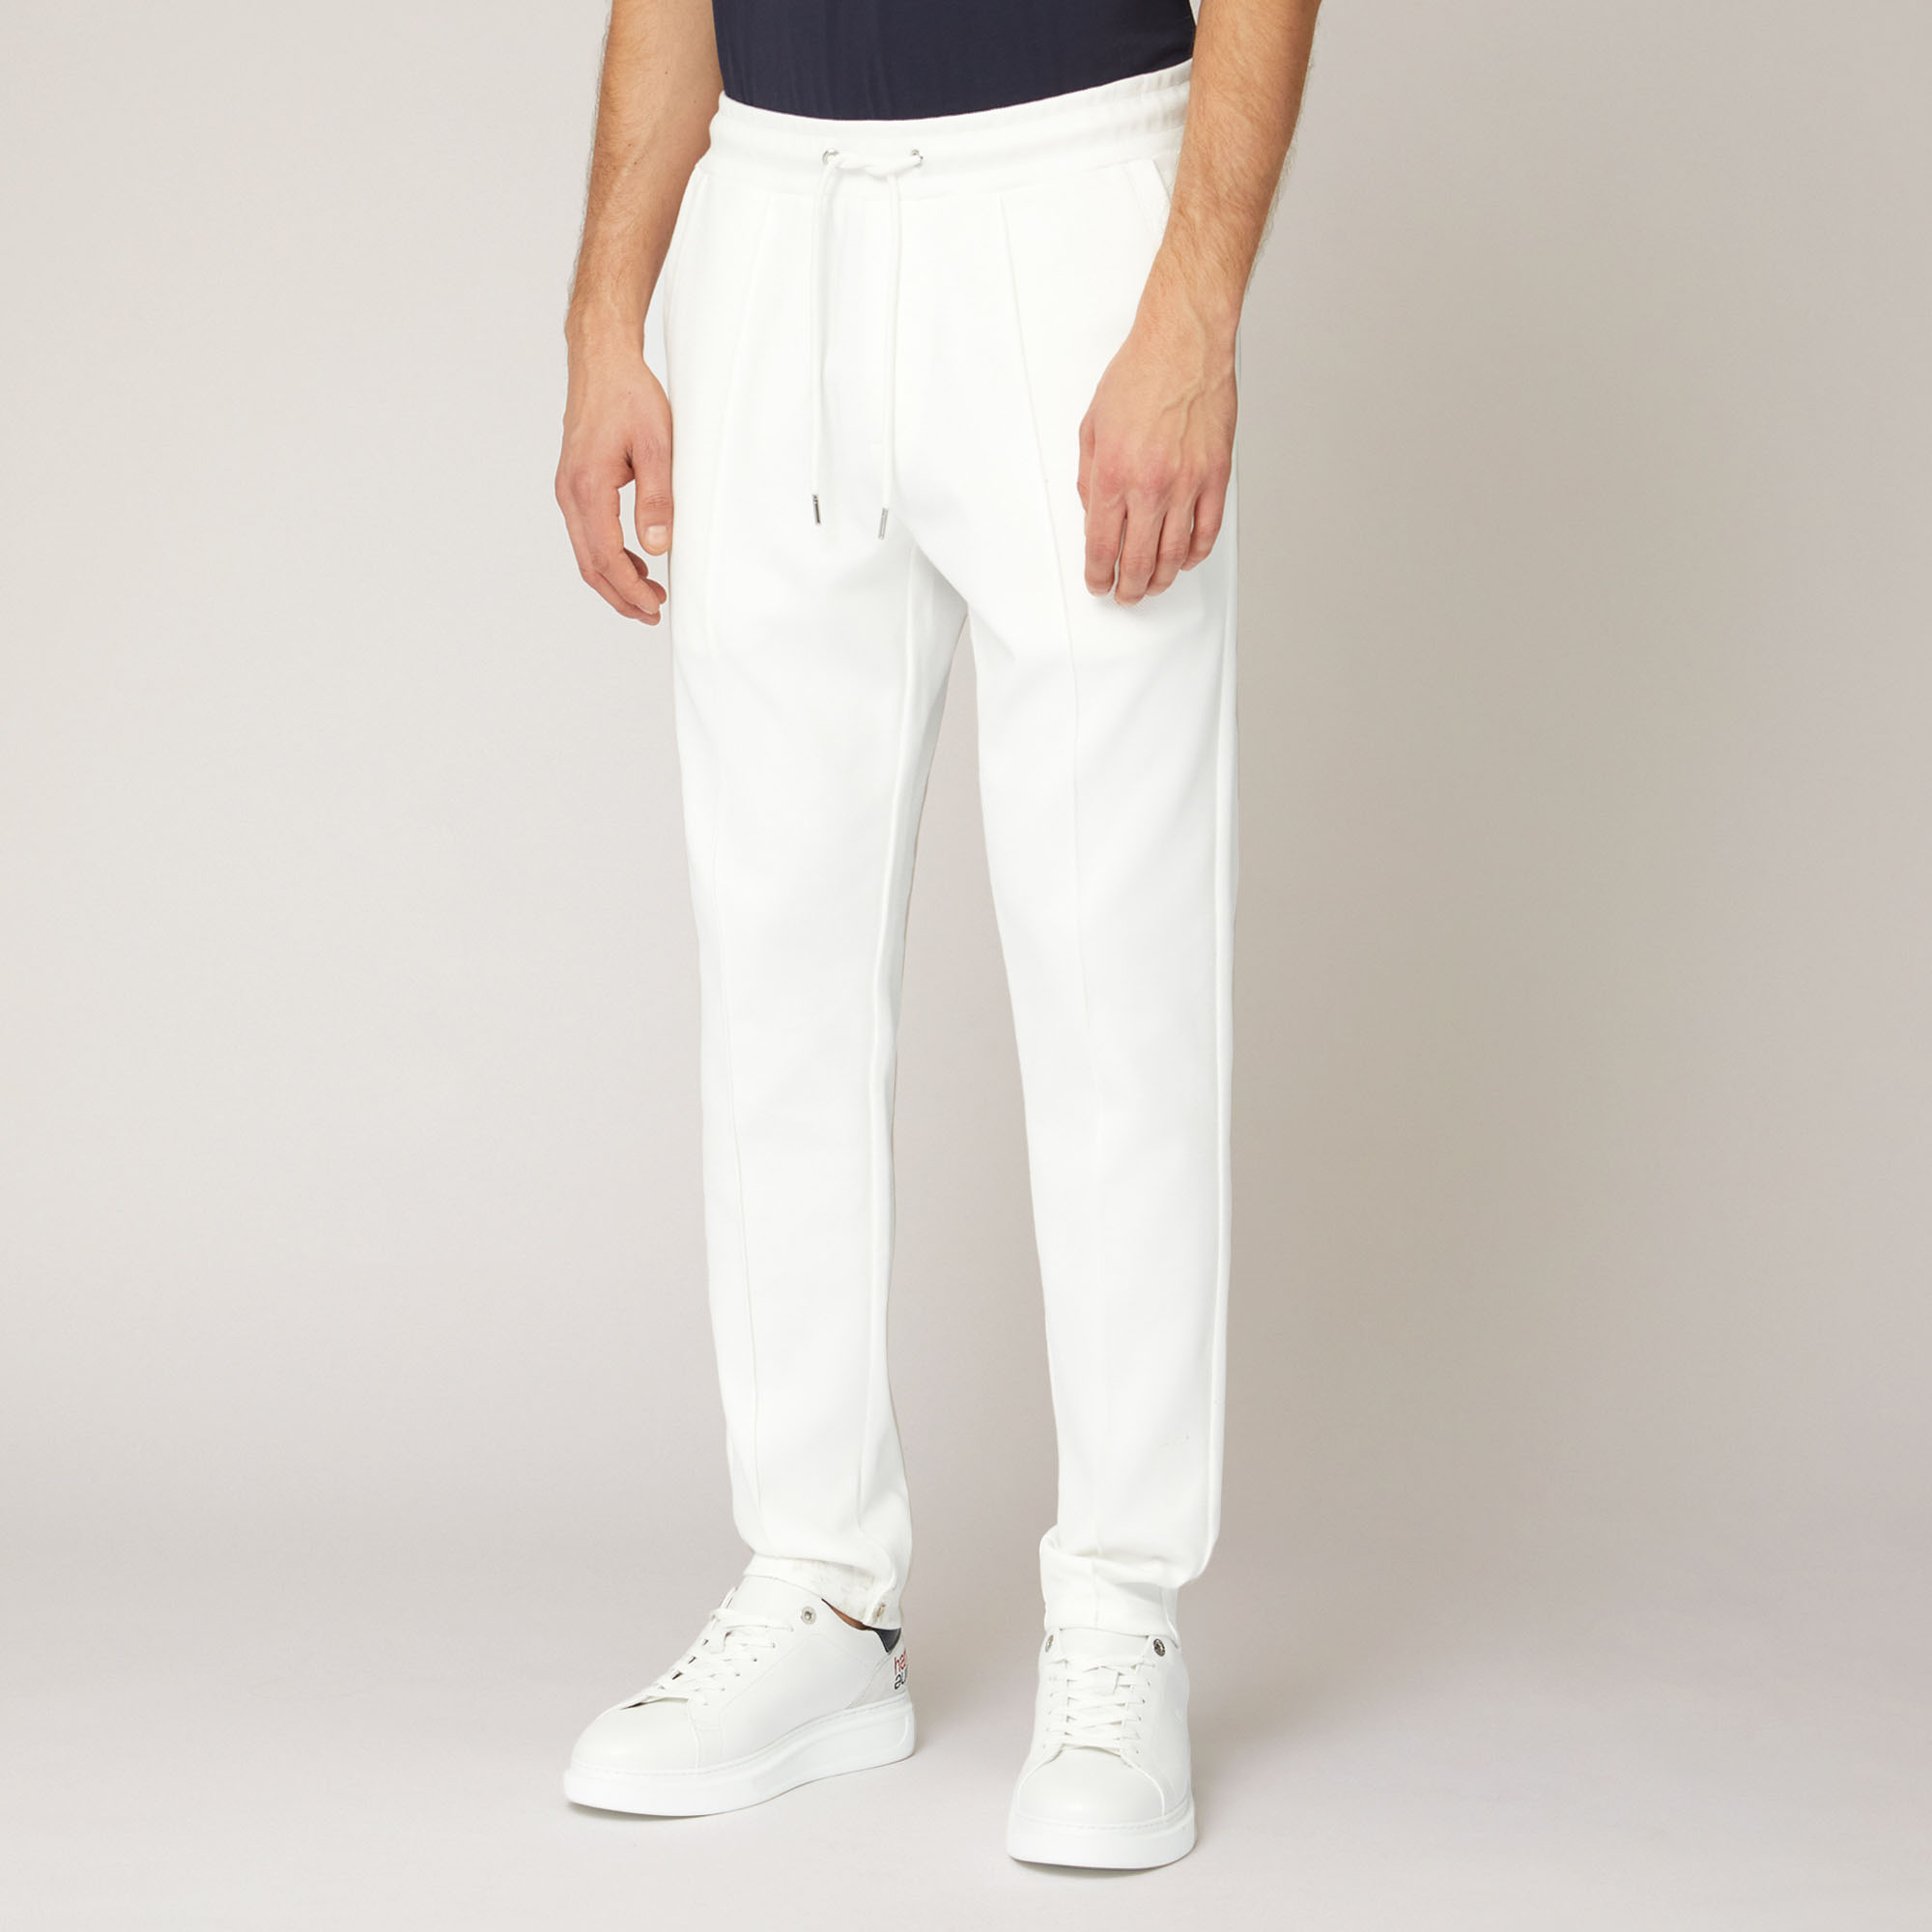 Pantalón de algodón elástico con bolsillo trasero, Blanco, large image number 0